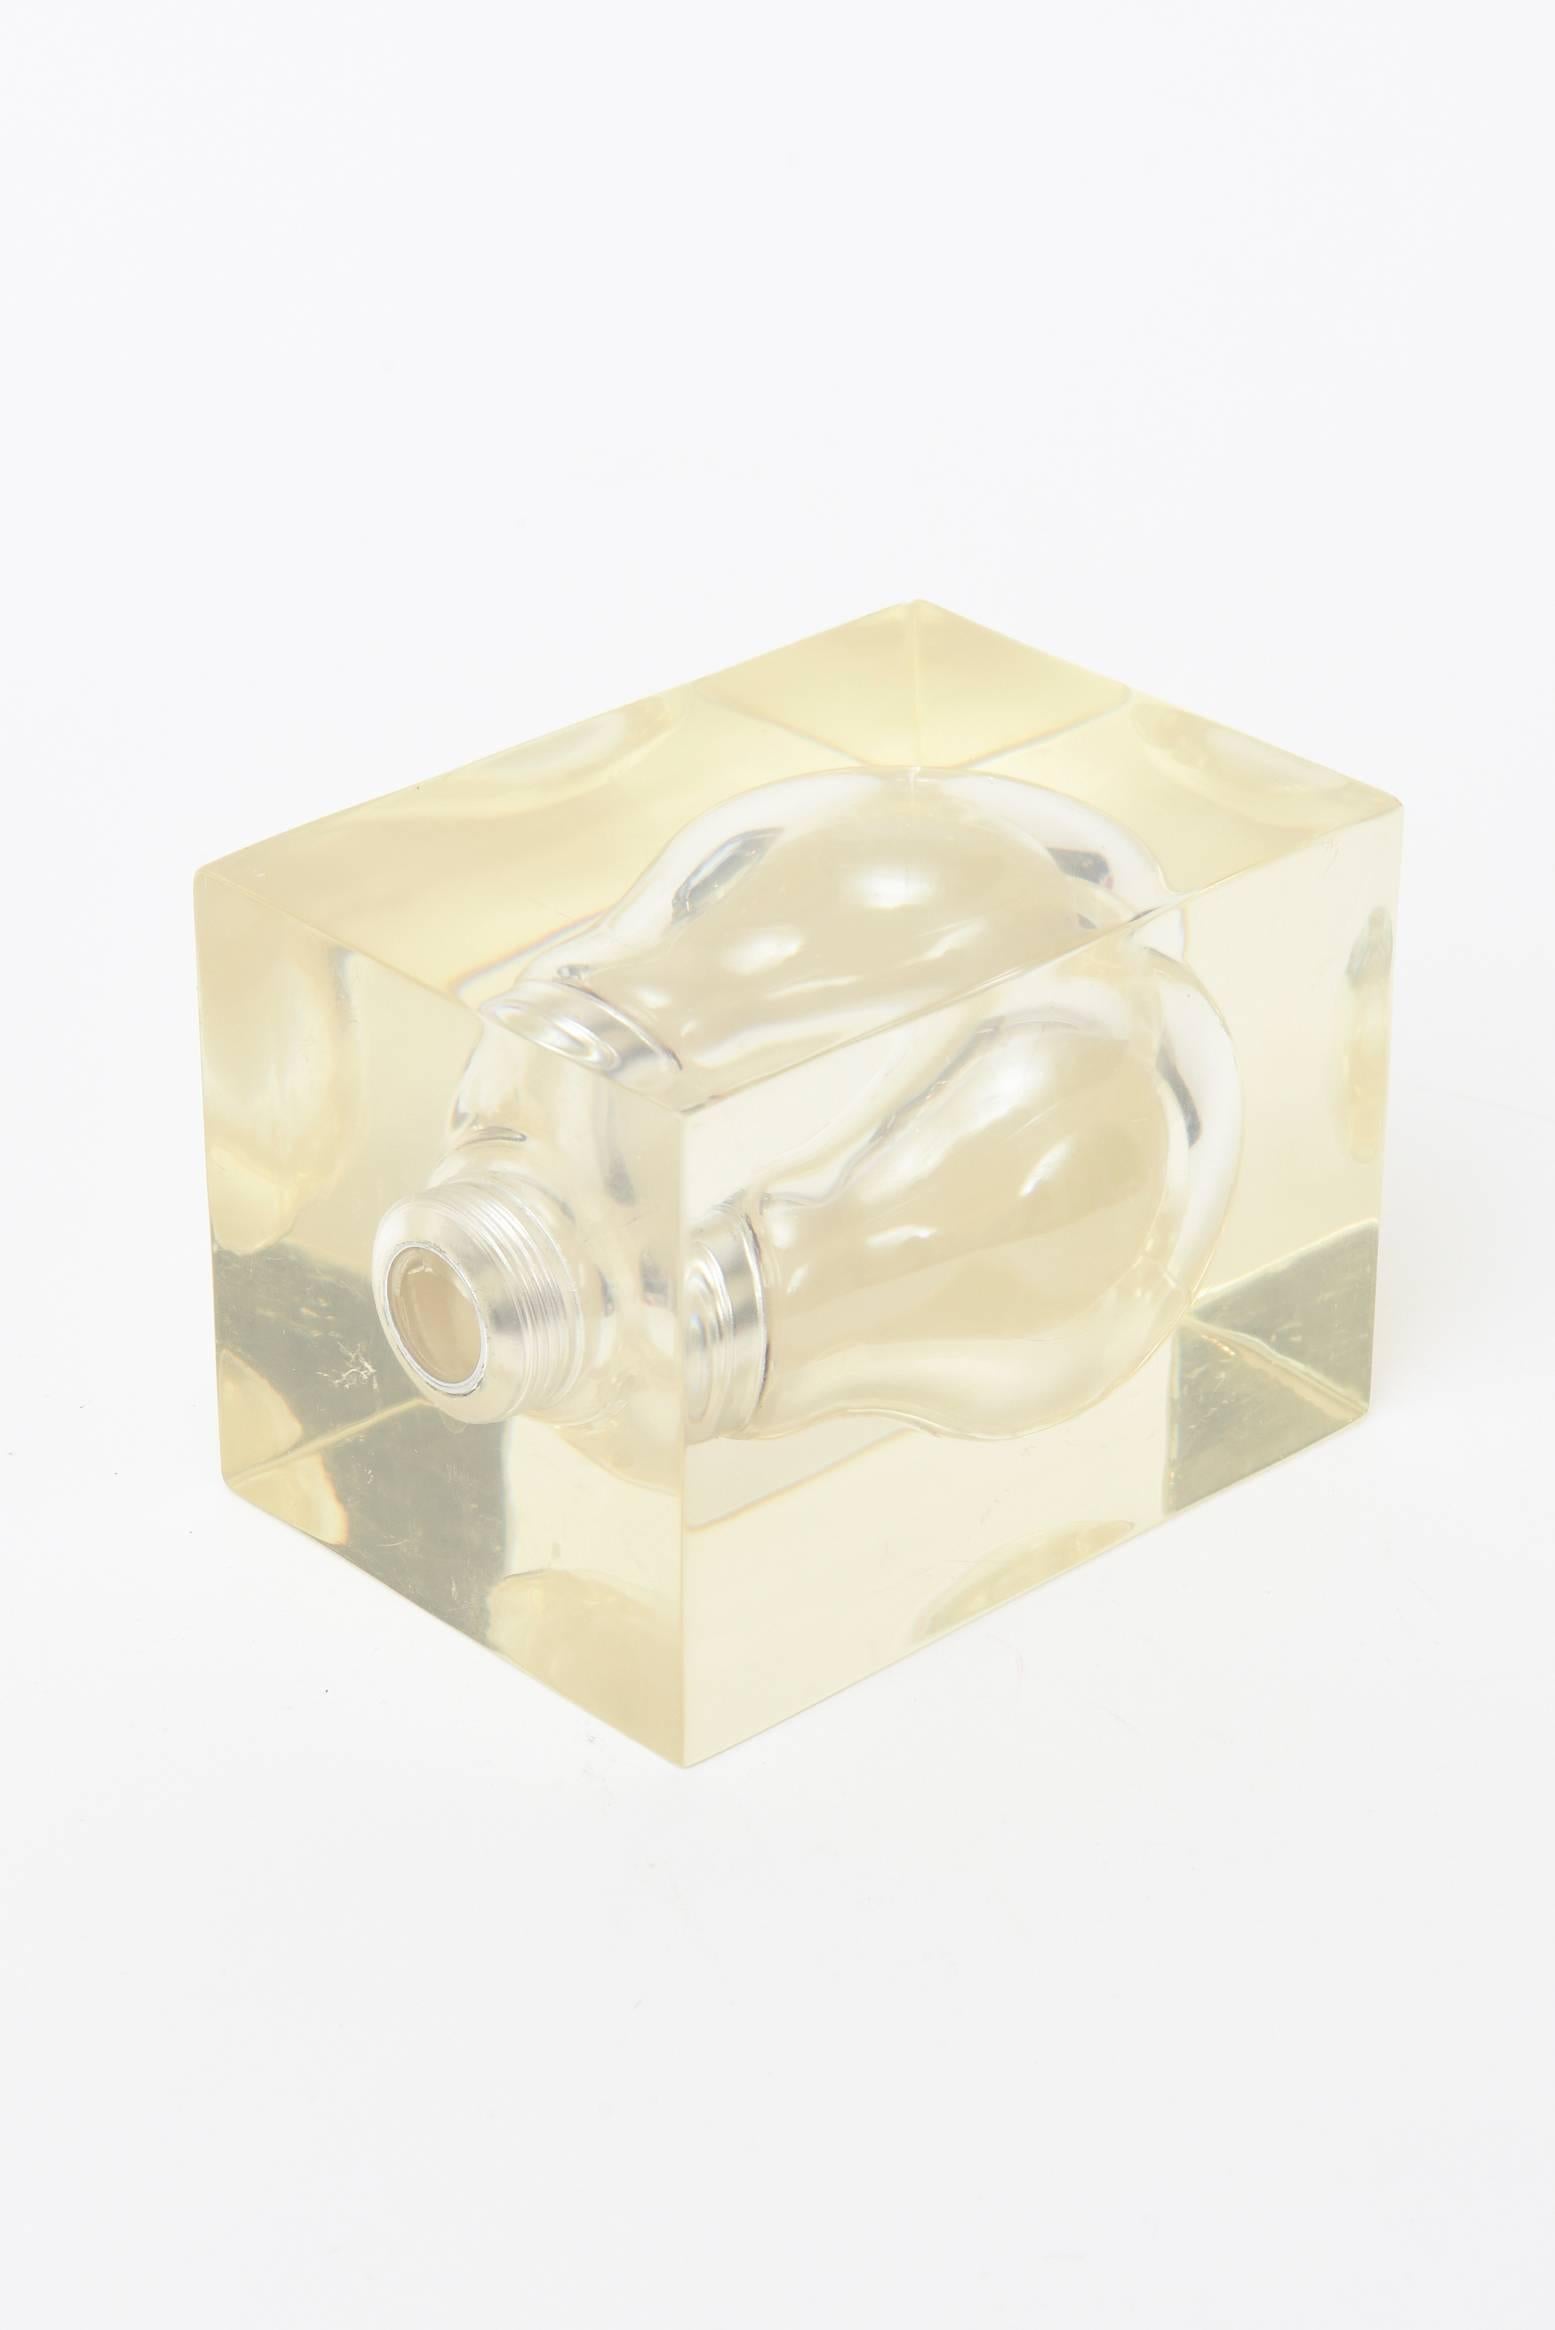 Modern Pierre Giraudon French Pop Art Lucite Light Bulb Sculpture/ Paperweight /SALE